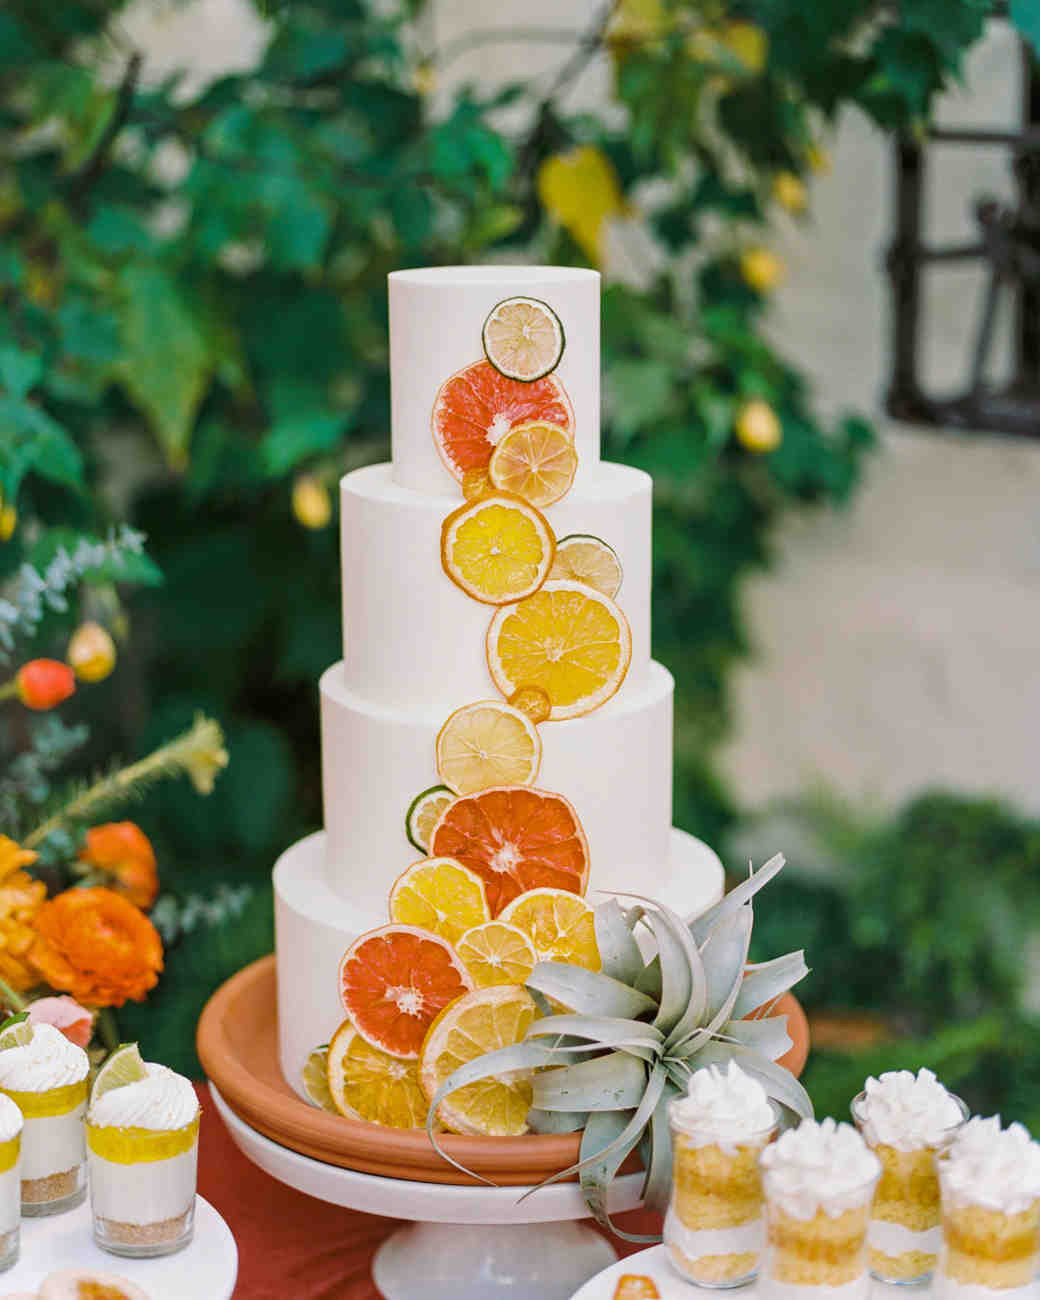 Summer Wedding Cakes
 Summer Wedding Cakes That Speak to the Season